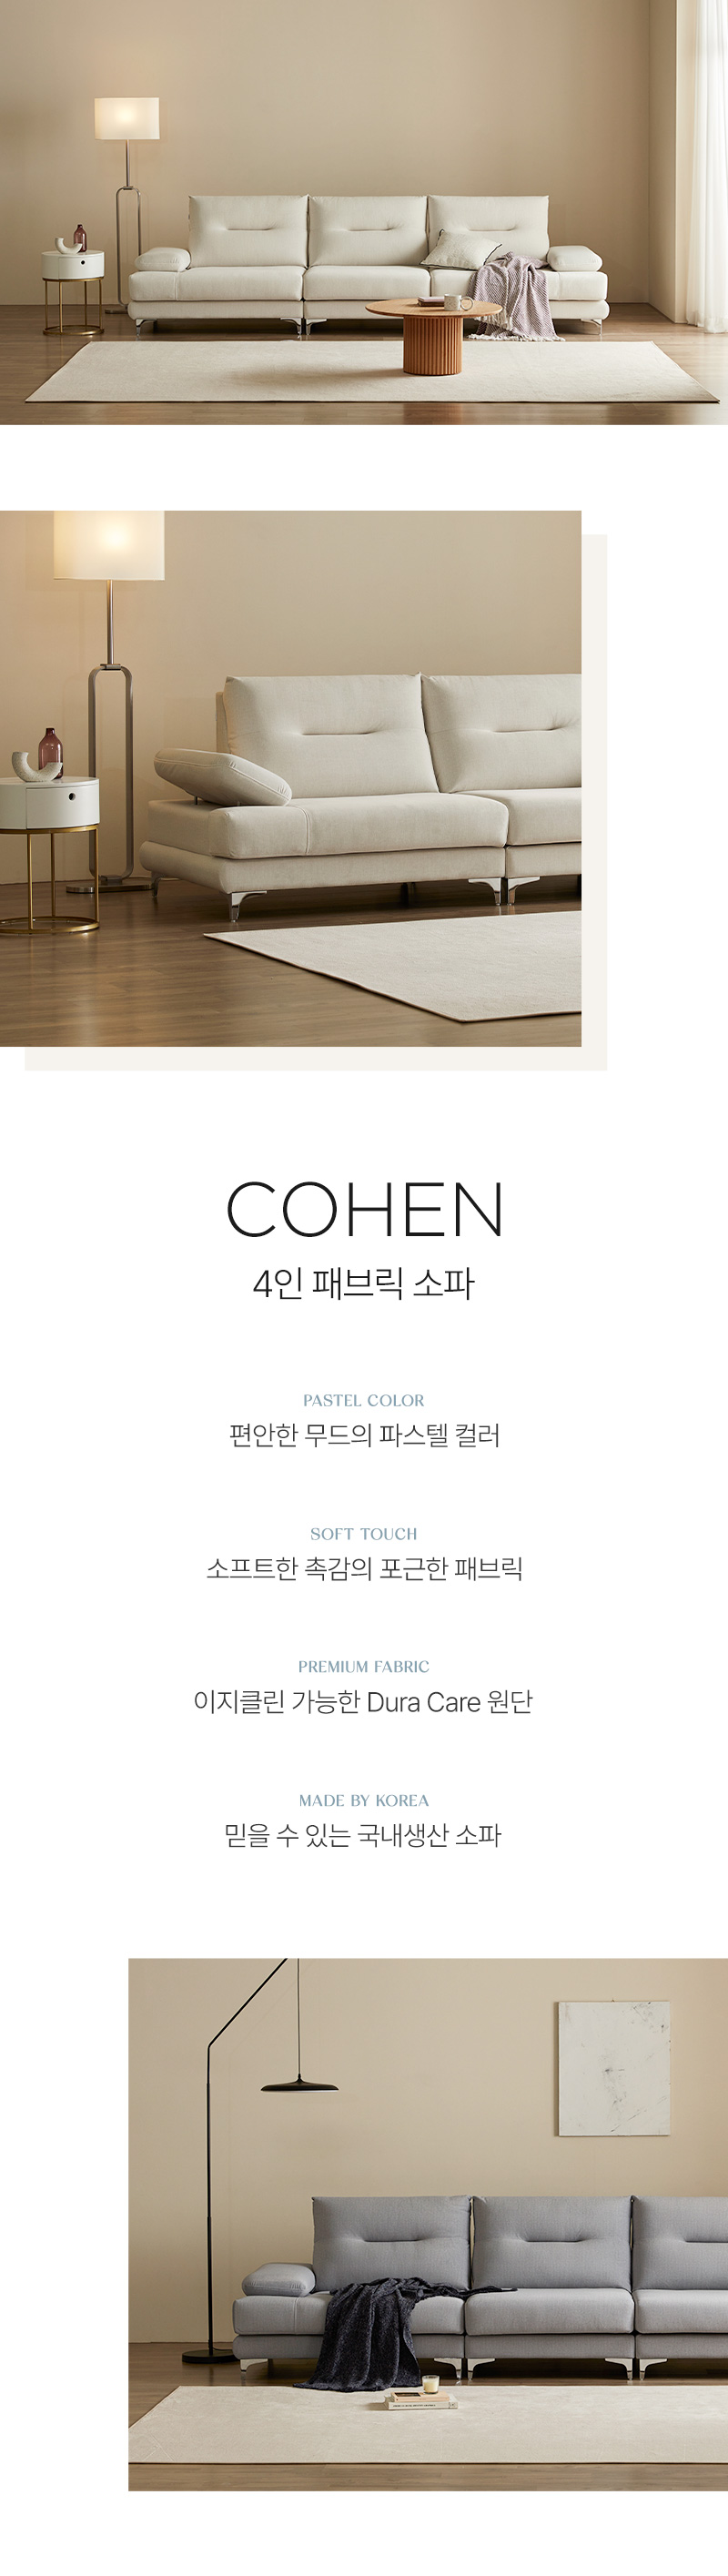 800_Cohen-4-Sofa_01.jpg